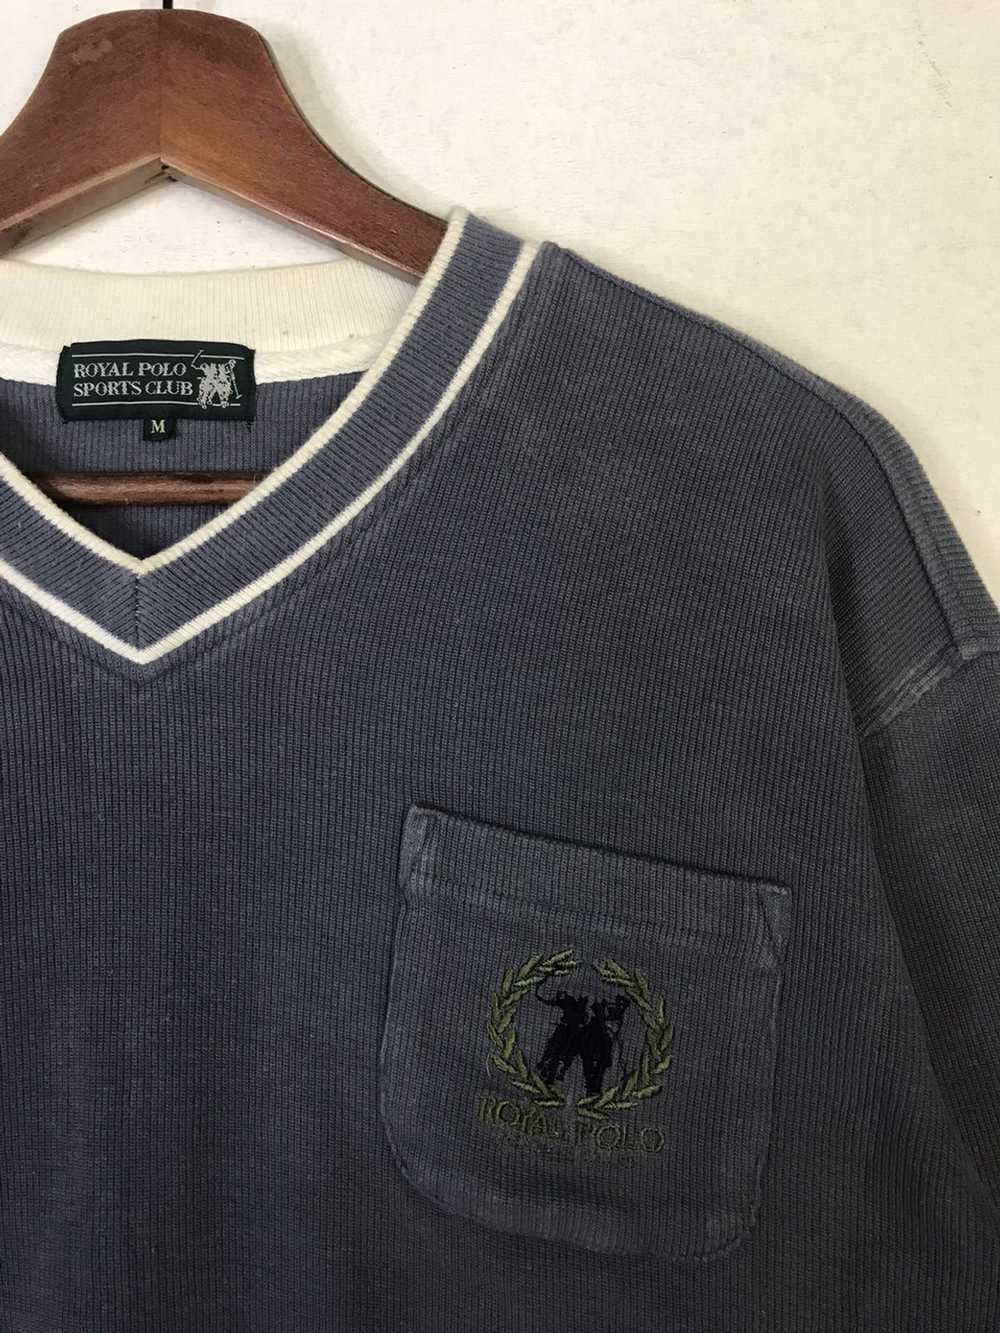 Vintage Royal Polo Sports Club Sweatshirt - image 3